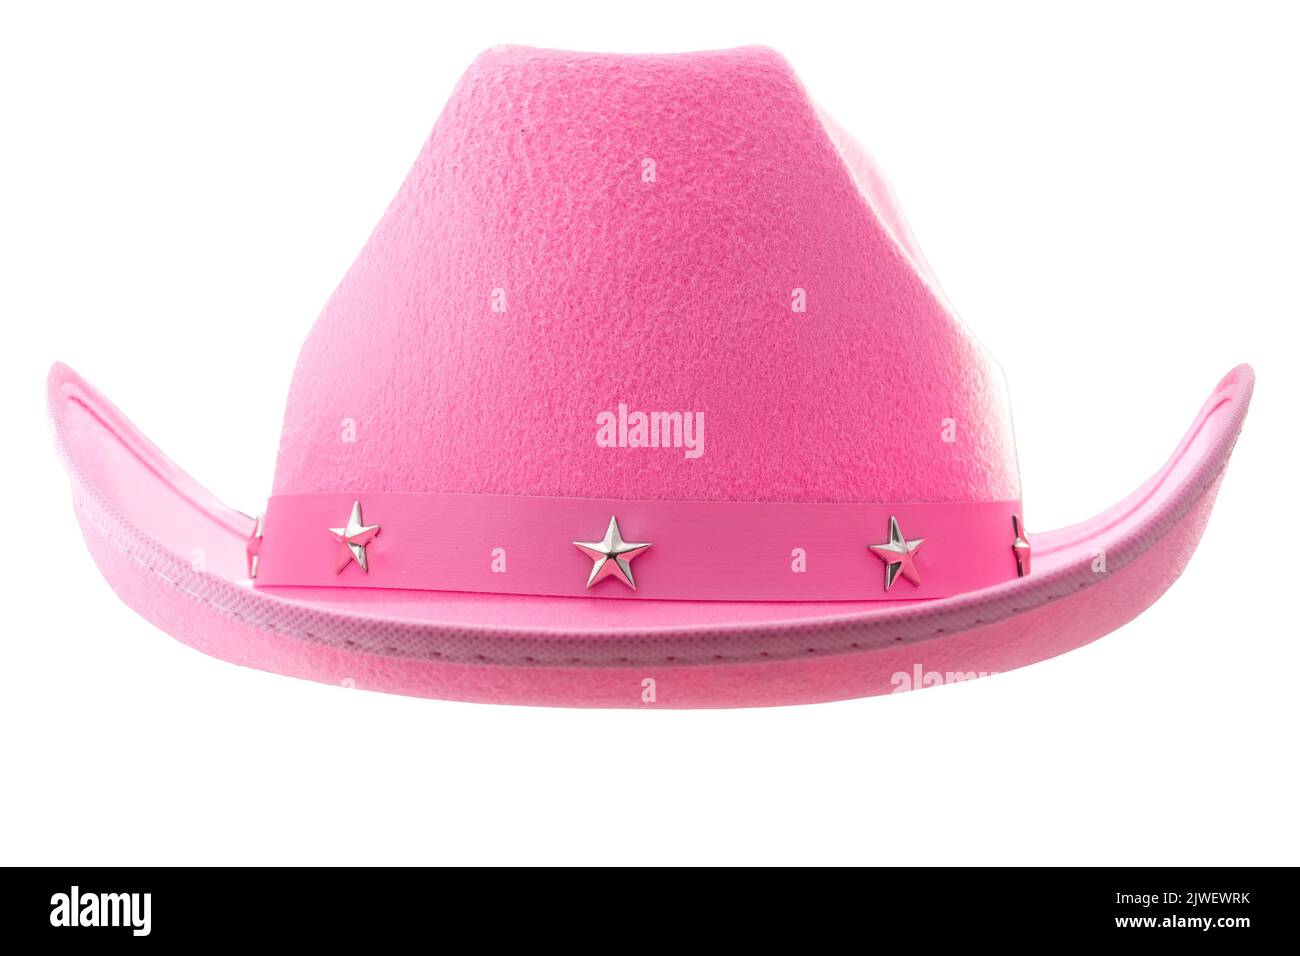 Cappello rosa da cowboy isolato su sfondo bianco con taglio del percorso per abiti femminili occidentali, femminilità delicata, cultura americana e f Foto Stock